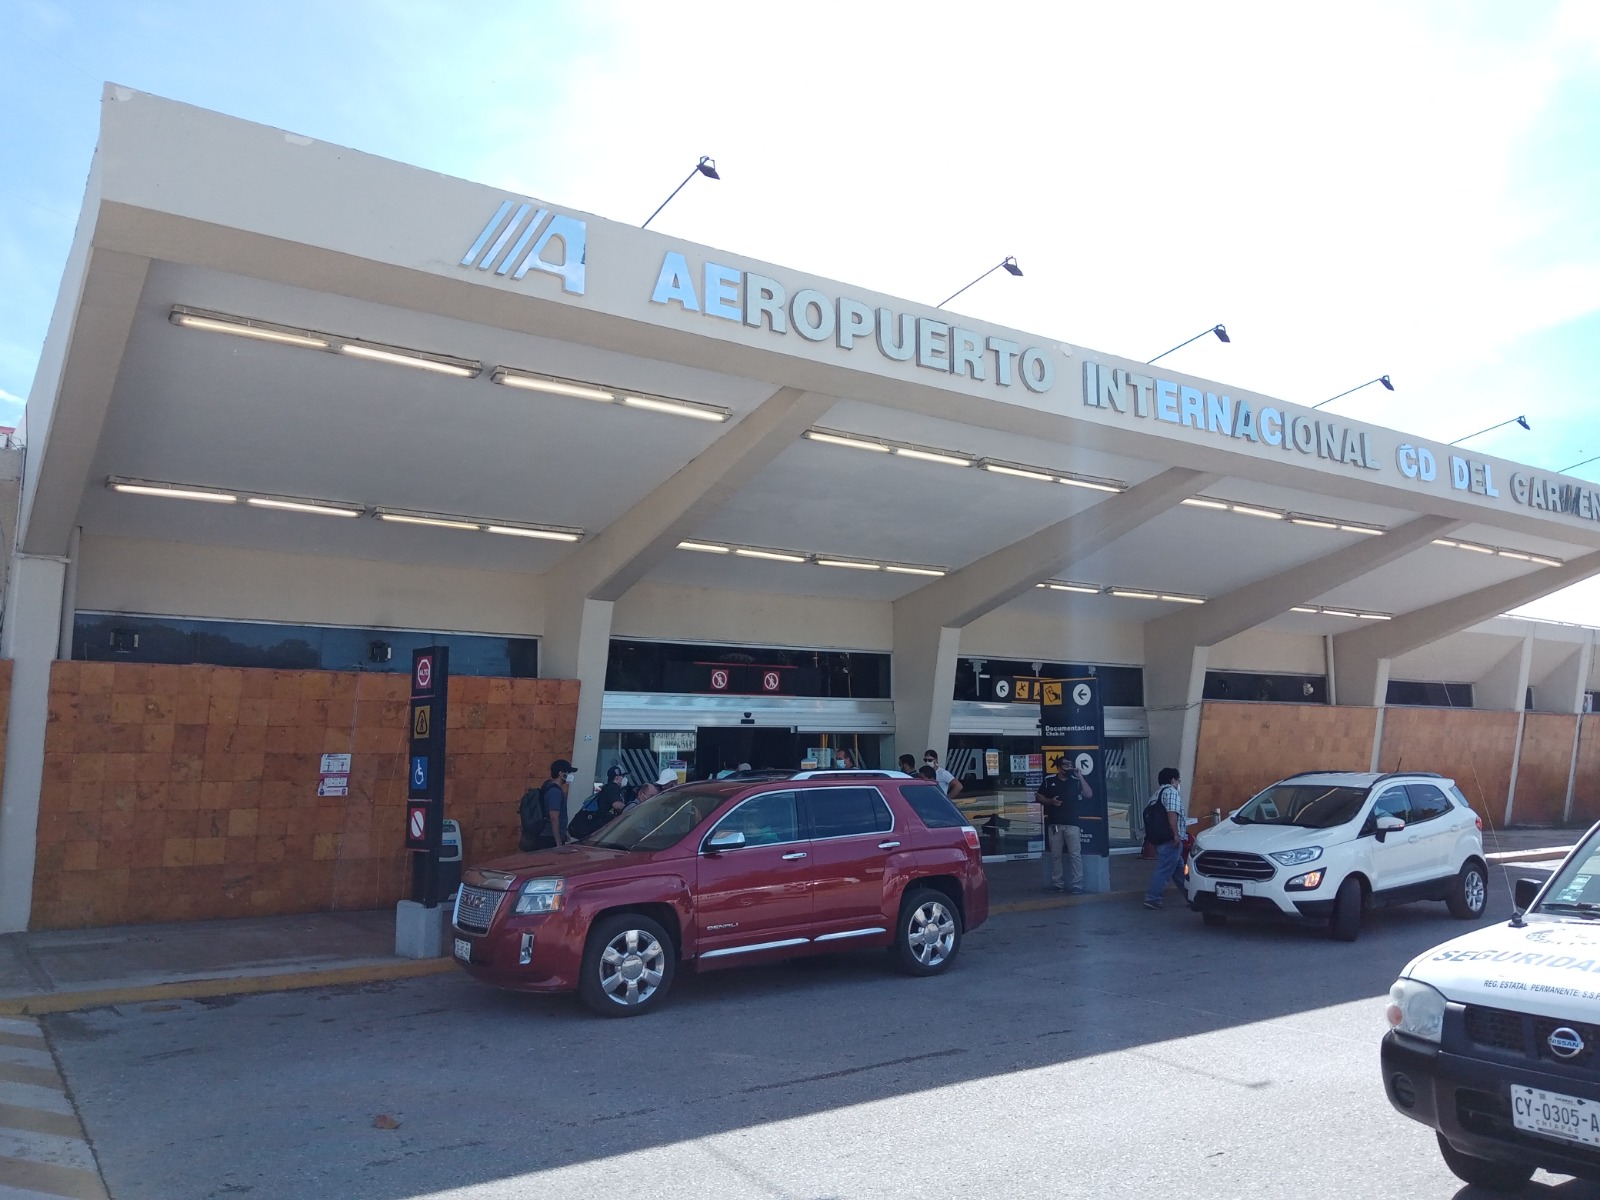 Nueva aerolínea iniciará su servicio de interconectividad de Ciudad del Carmen a Villahermosa